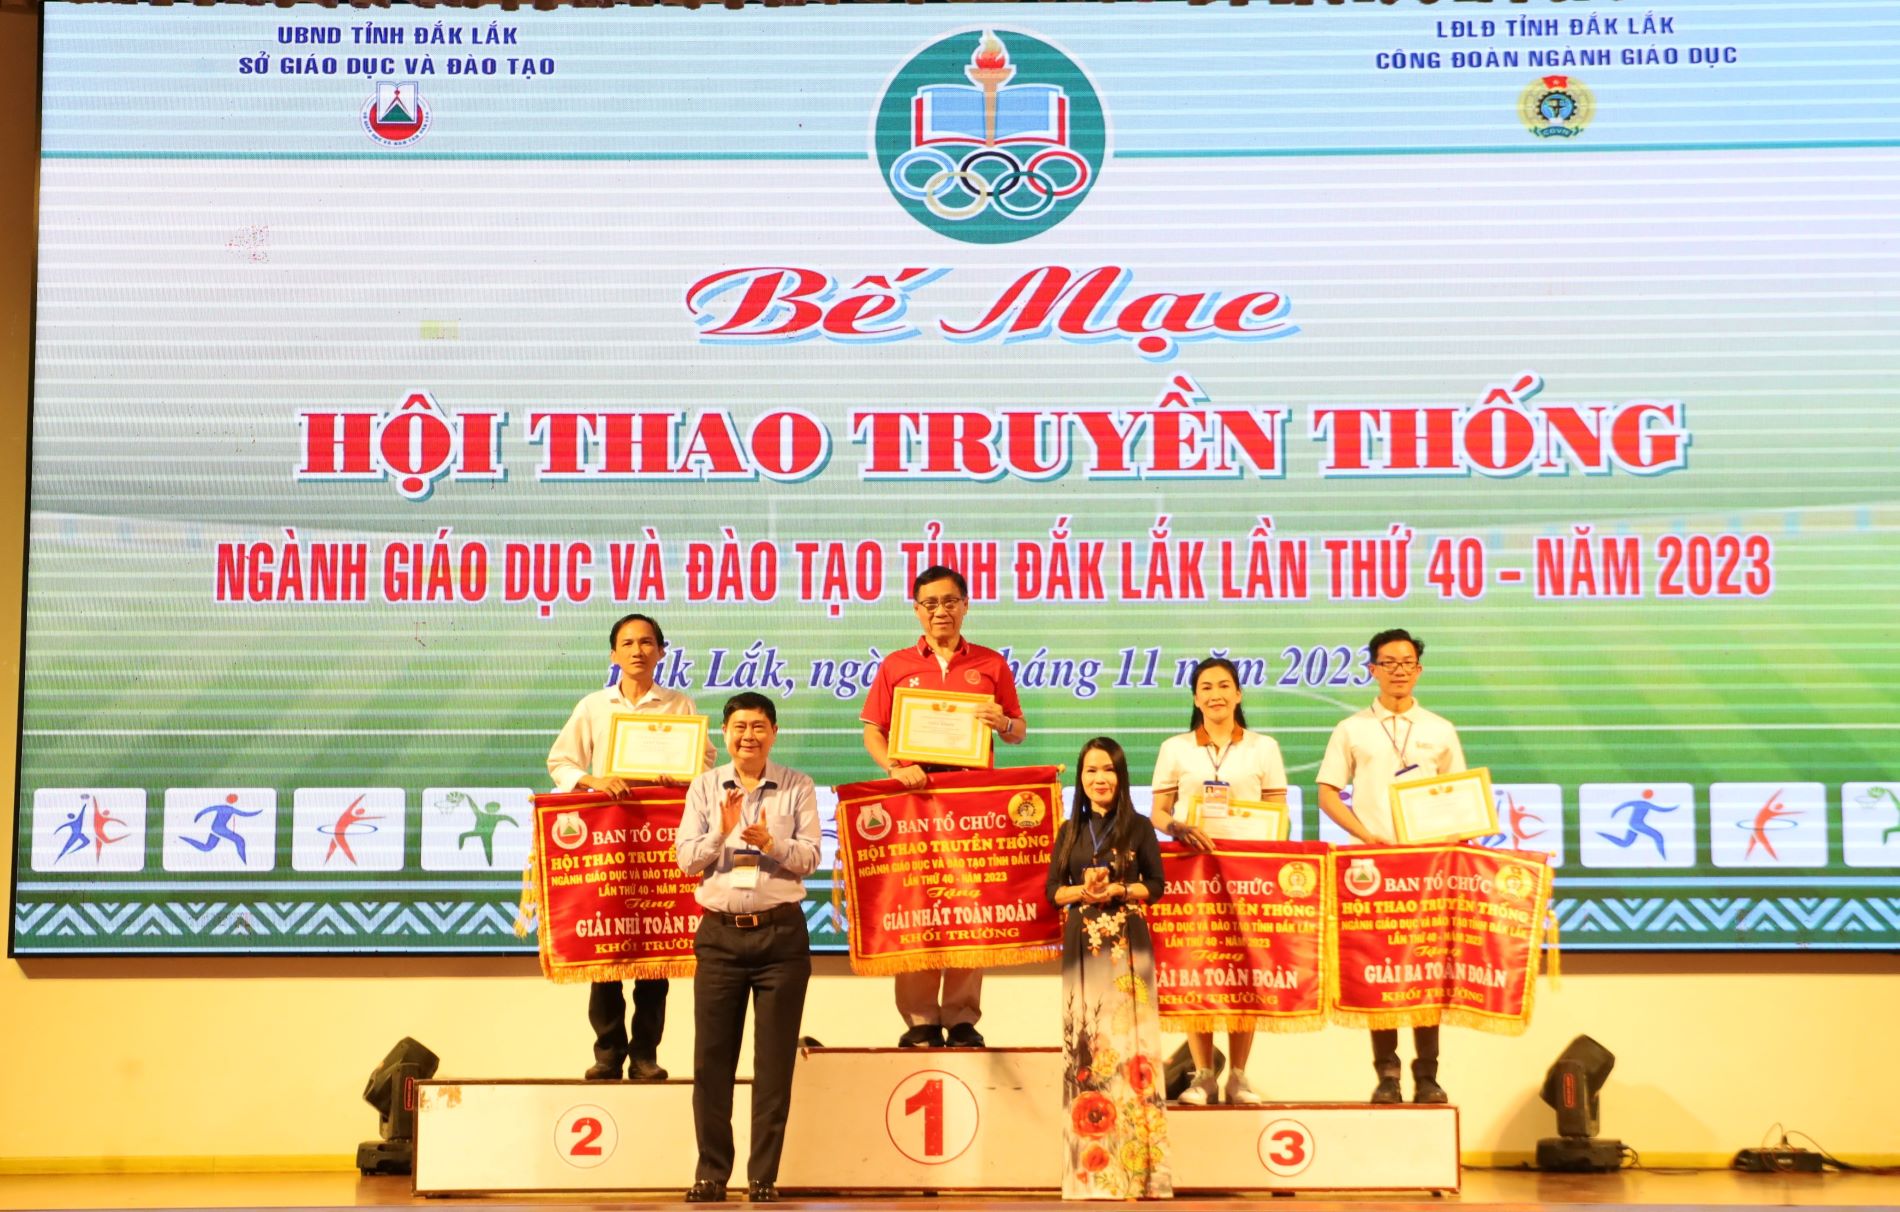 Bế mạc Hội thao truyền thống ngành Giáo dục và Đào tạo tỉnh Đắk Lắk lần thứ 40 - năm 2023